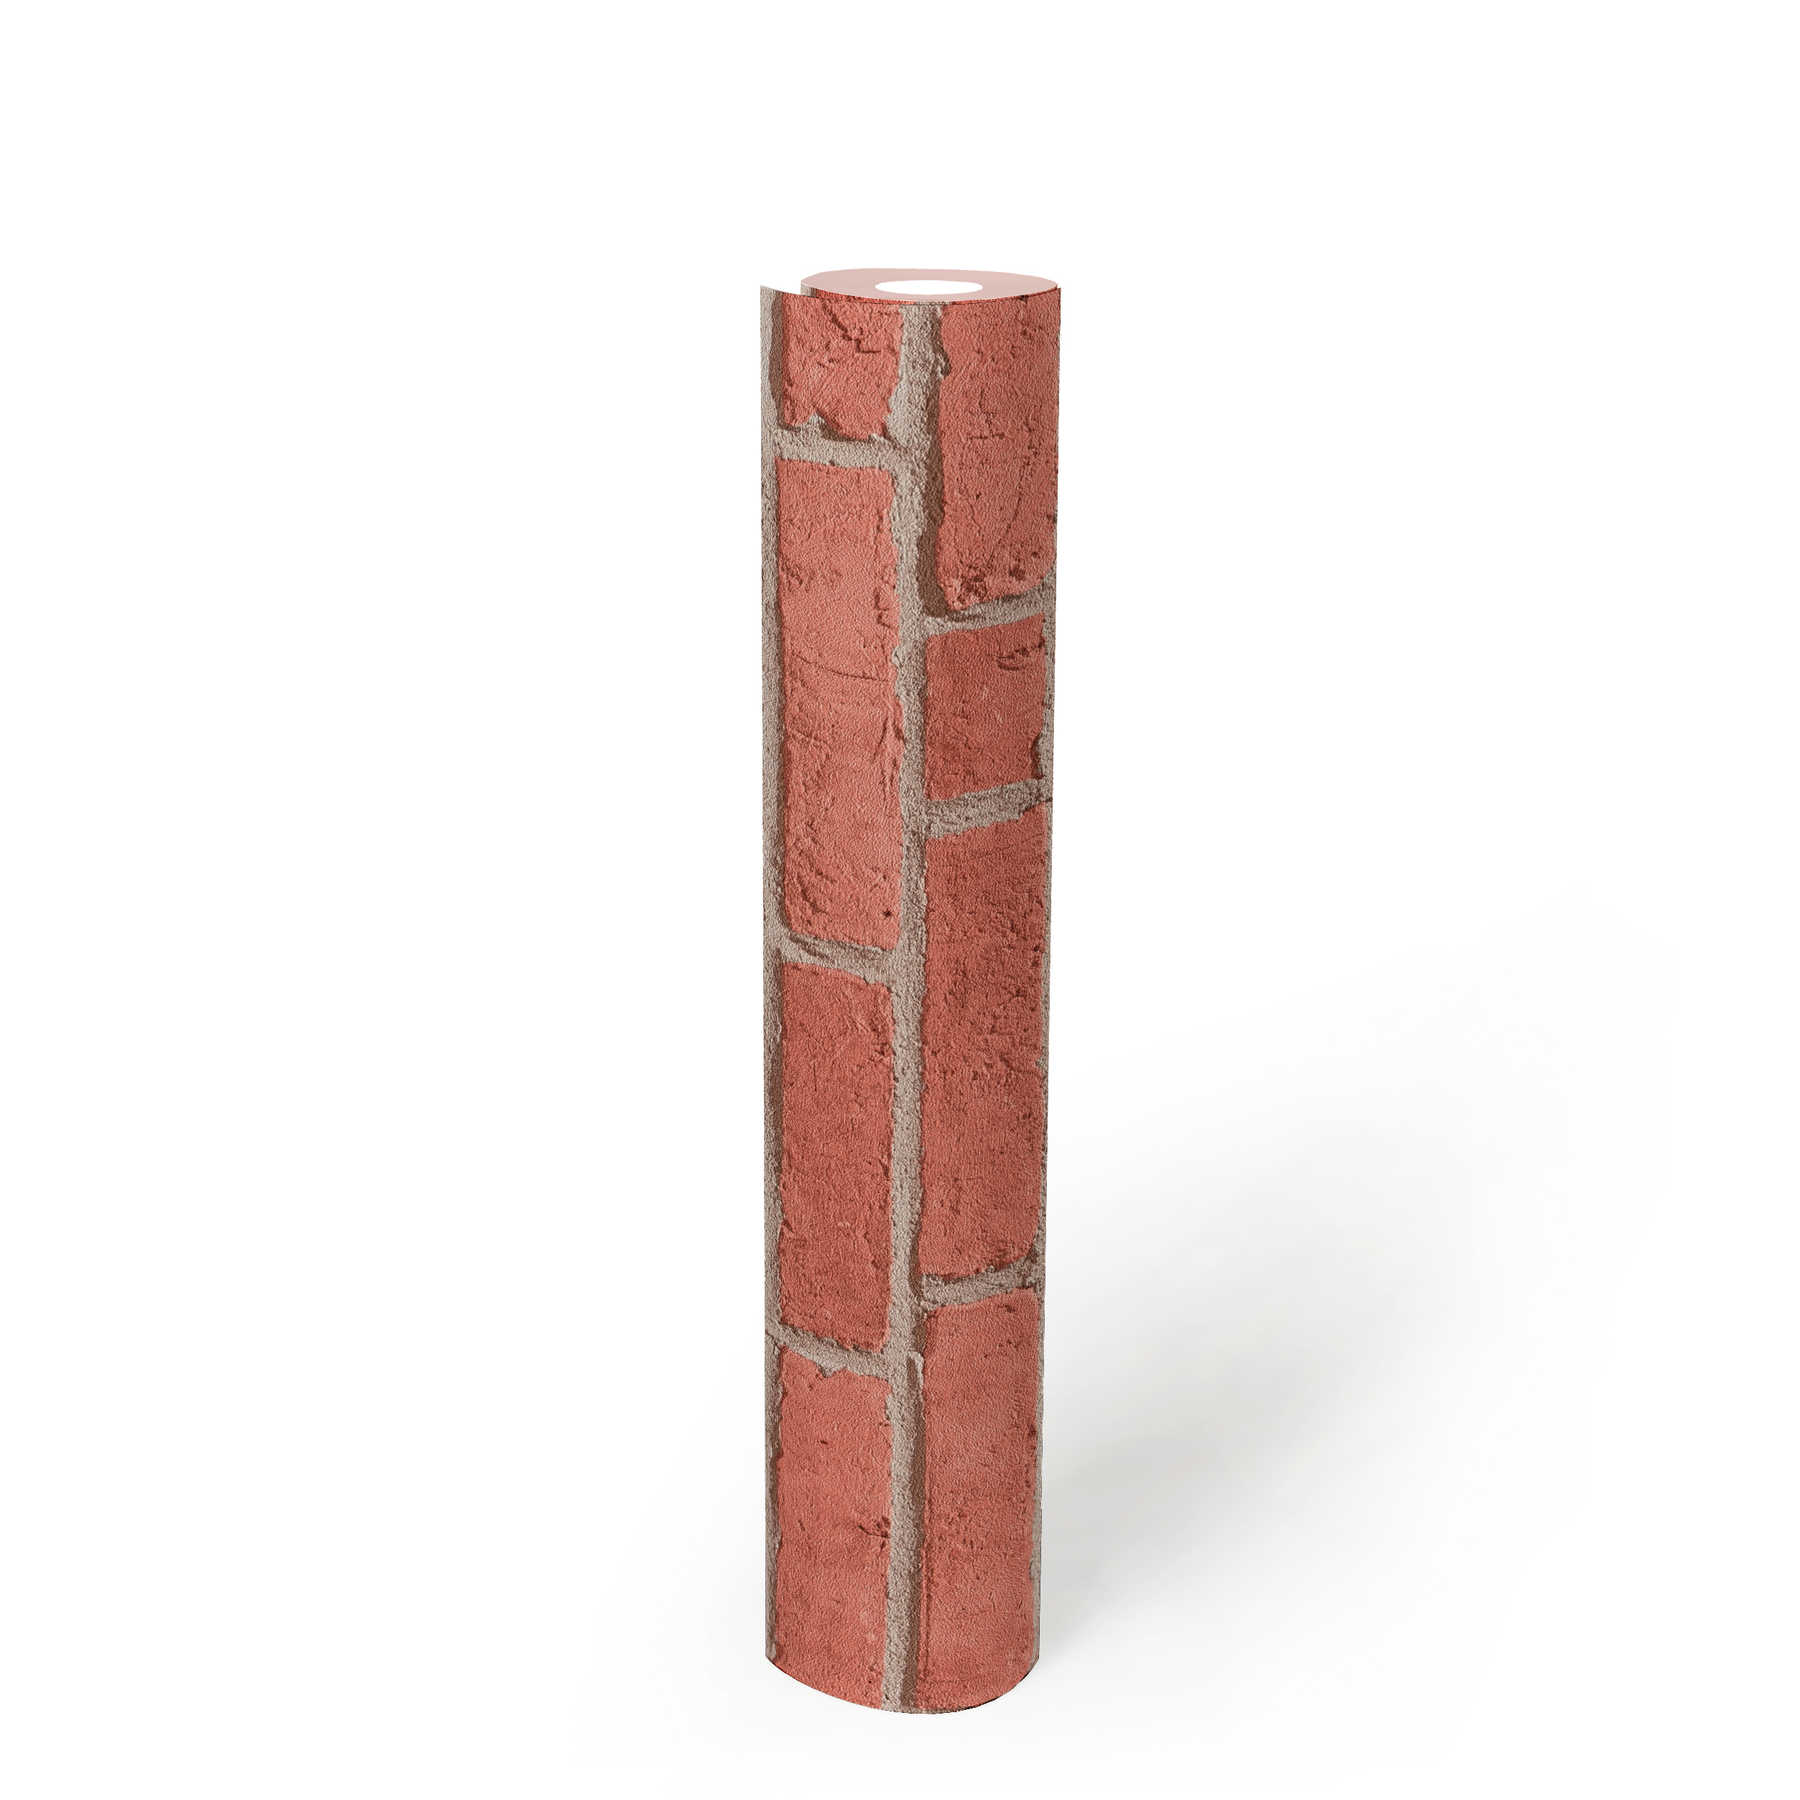             Papel pintado de piedra con diseño de ladrillo clásico y efecto 3D - Rojo, Beige
        